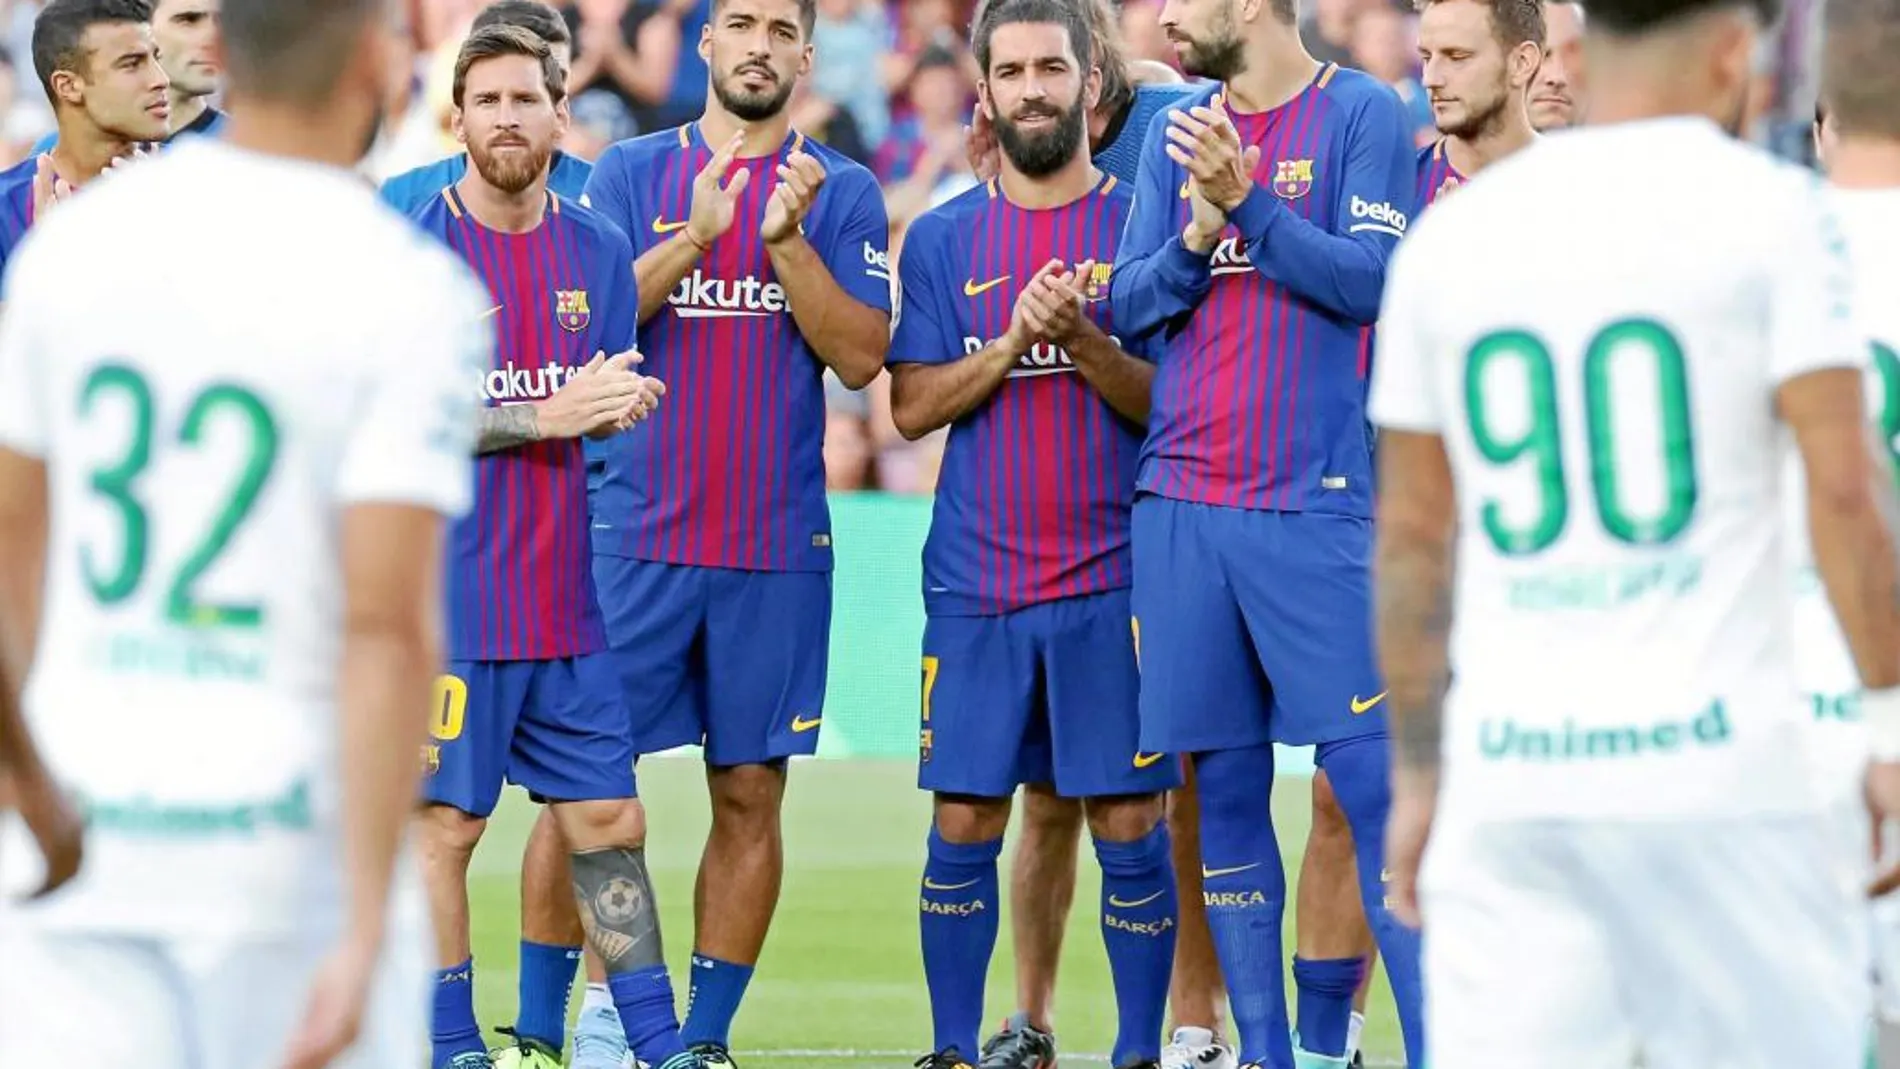 El Barcelona disputó ayer su primer partido sin Neymar. Fue en el Gamper, en un duelo muy emotivo porque se enfrentó al Chapecoense, el equipo que perdió a casi toda su plantilla en un accidente de avión. Ganó el Barça 5-0